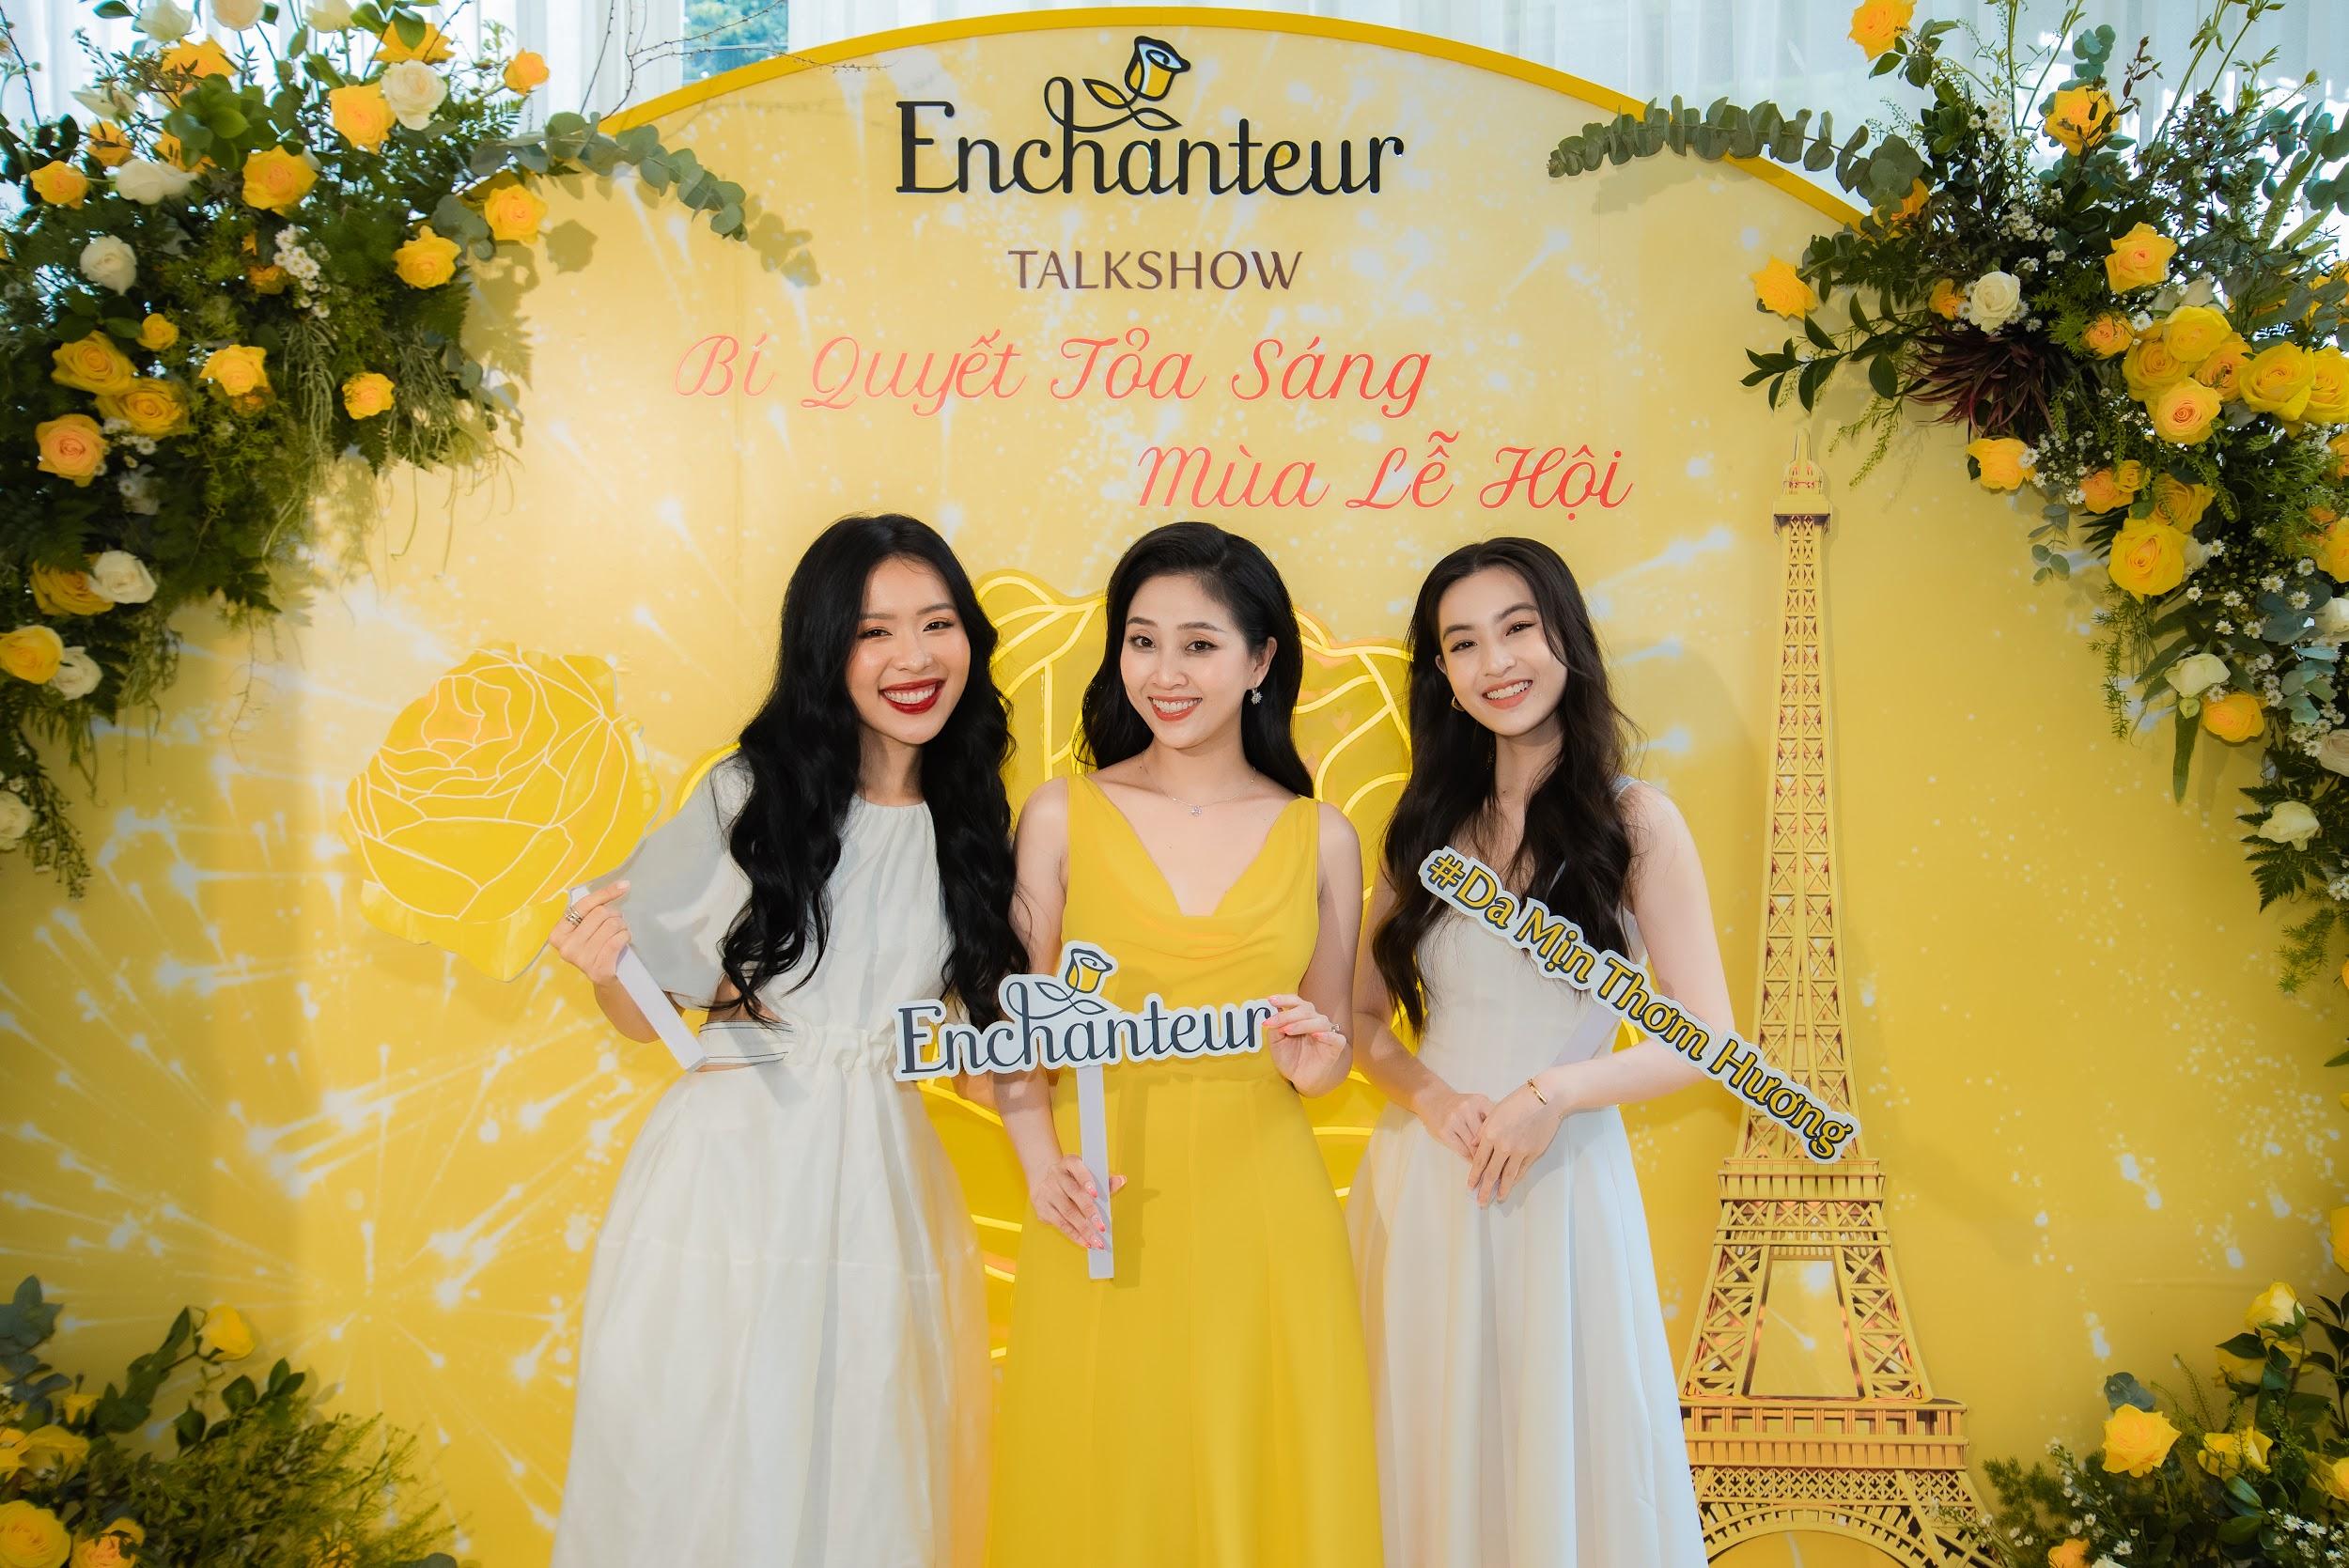 Thảo Tâm, An Phương, Liêu Hà Trinh cùng nhau trò chuyện về bí quyết tỏa sáng mùa lễ hội với Enchanteur - ảnh 1